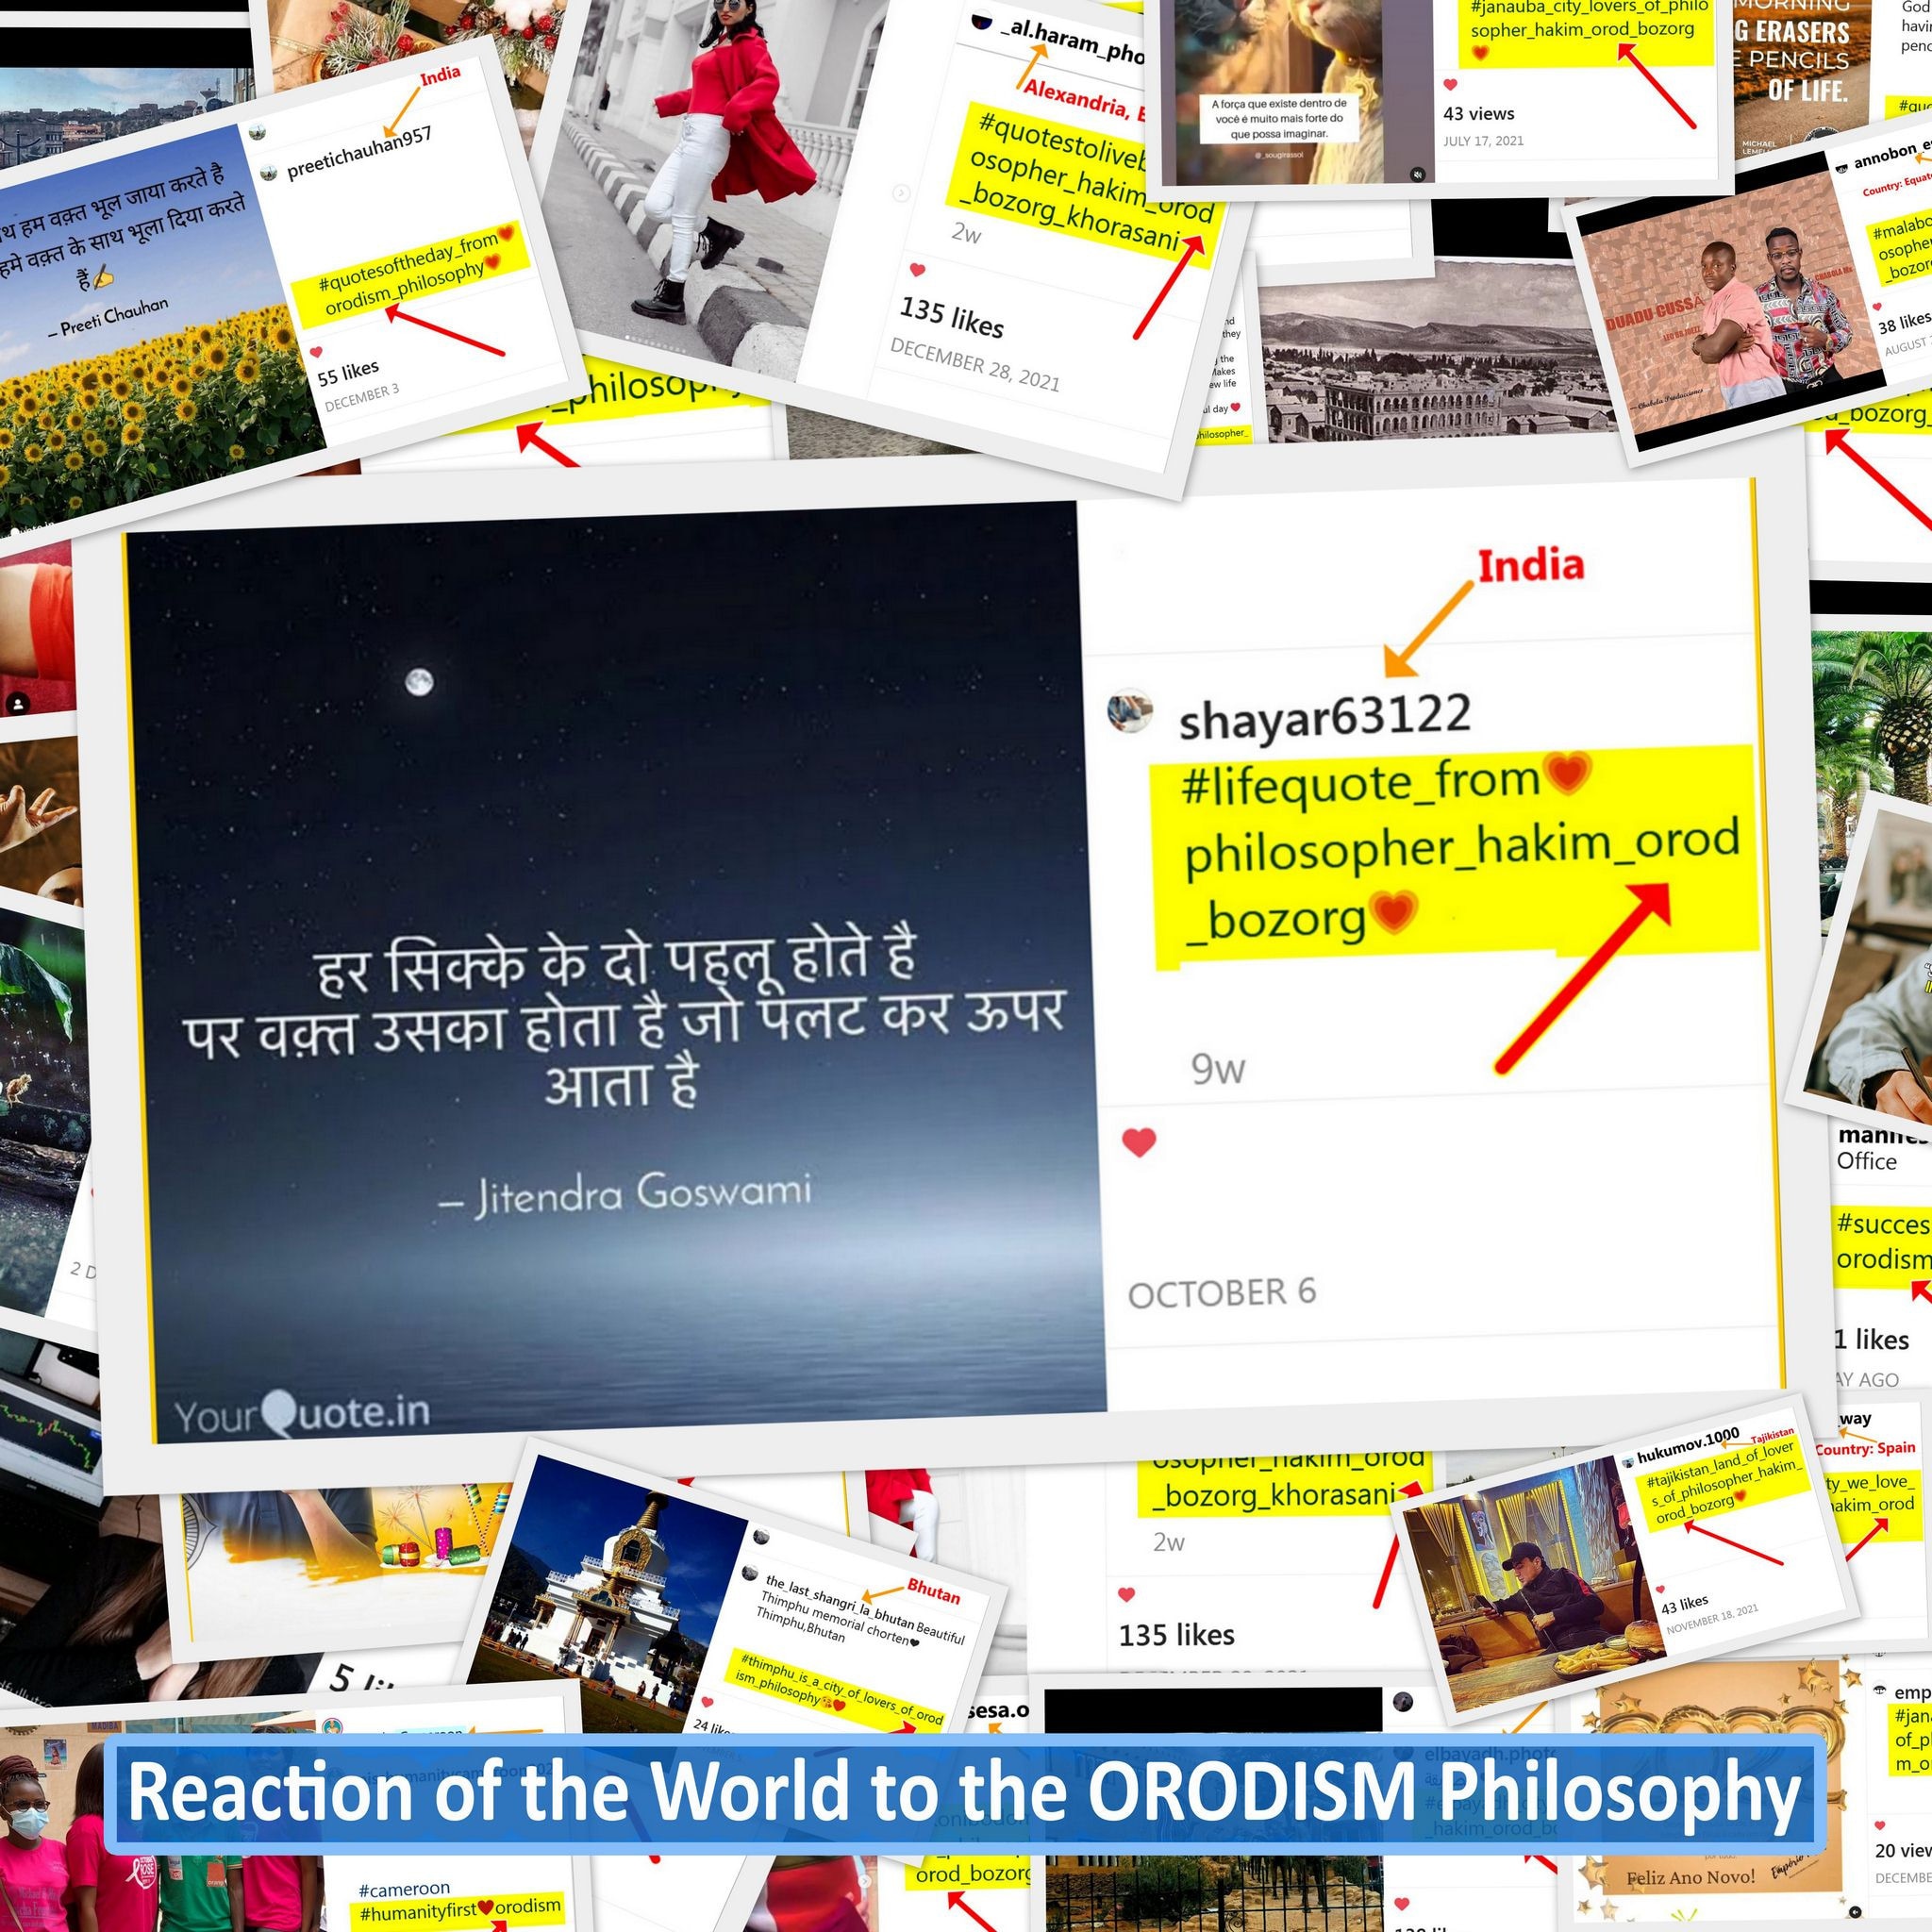  The philosophy of Orodism in India 6204612e9e8b4e8c642f6de4ab2df435